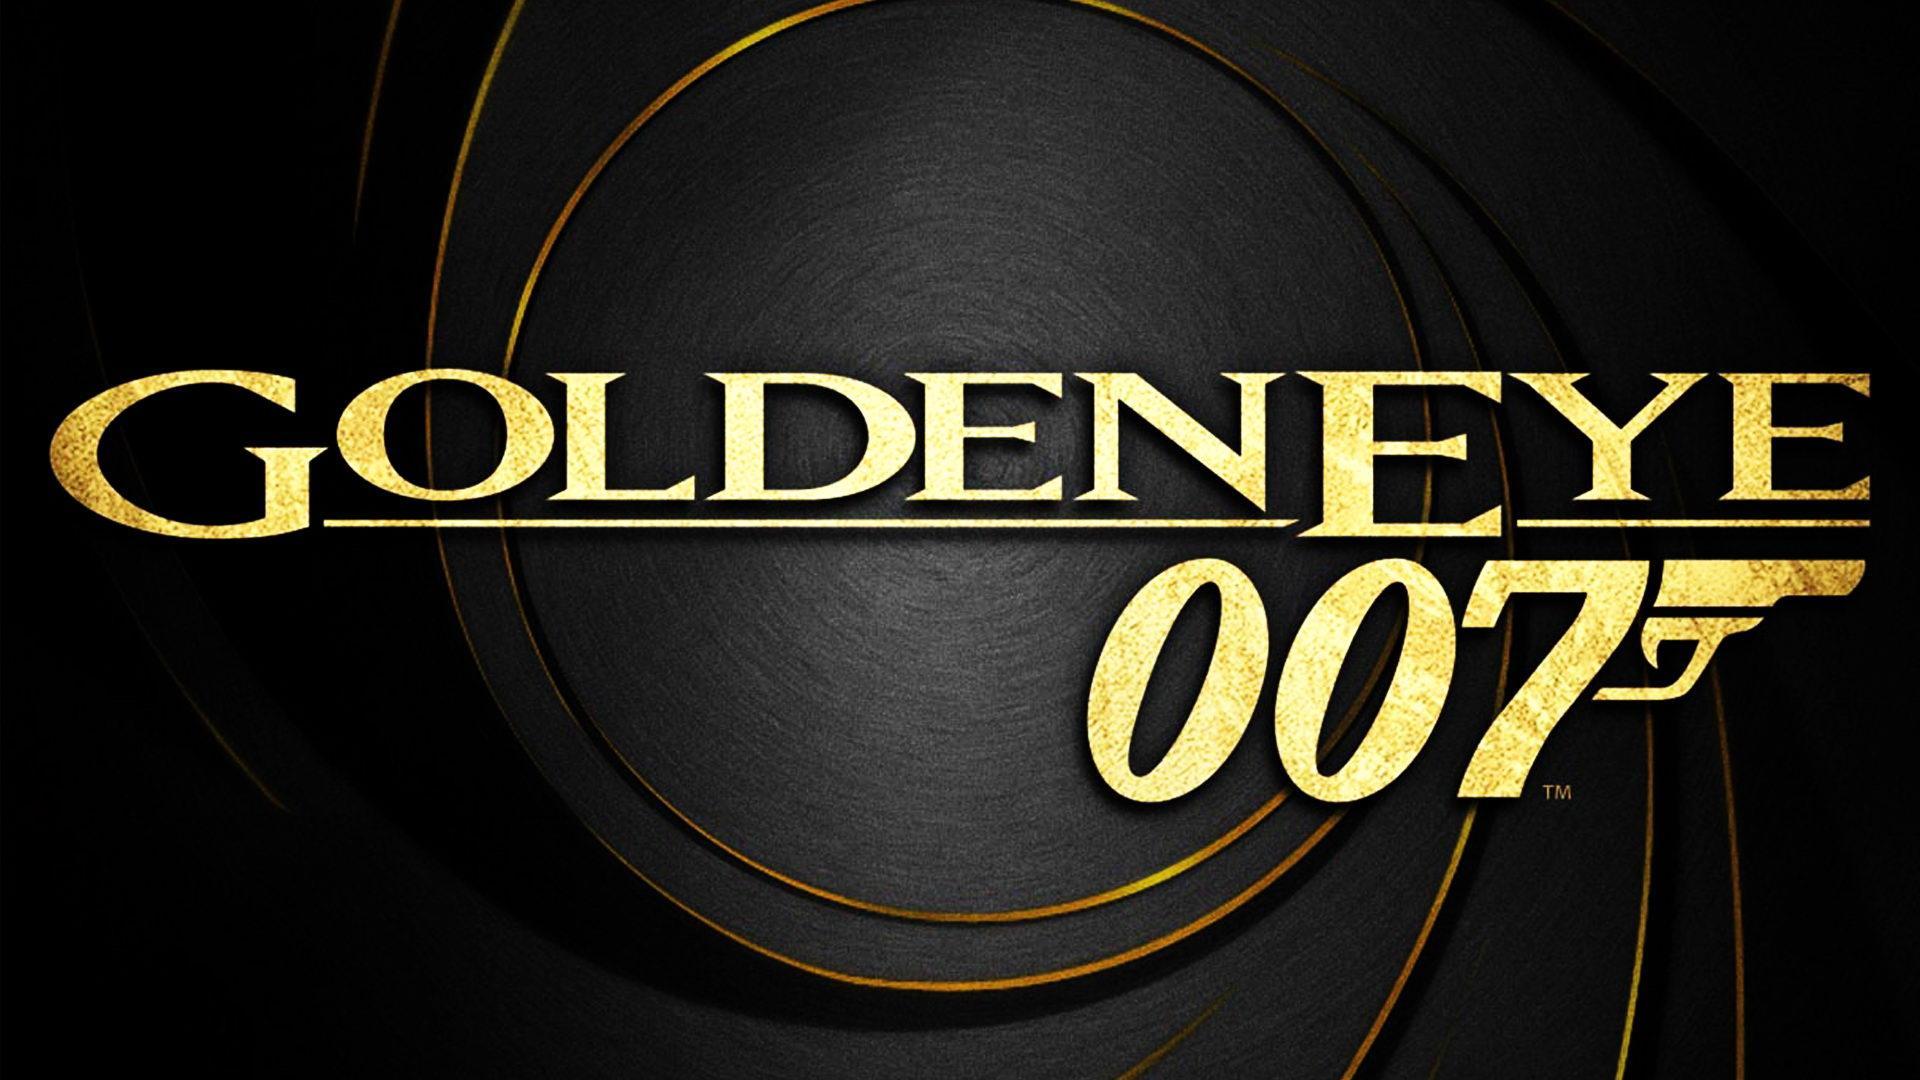 GoldenEye 007 Wallpaper For Pc